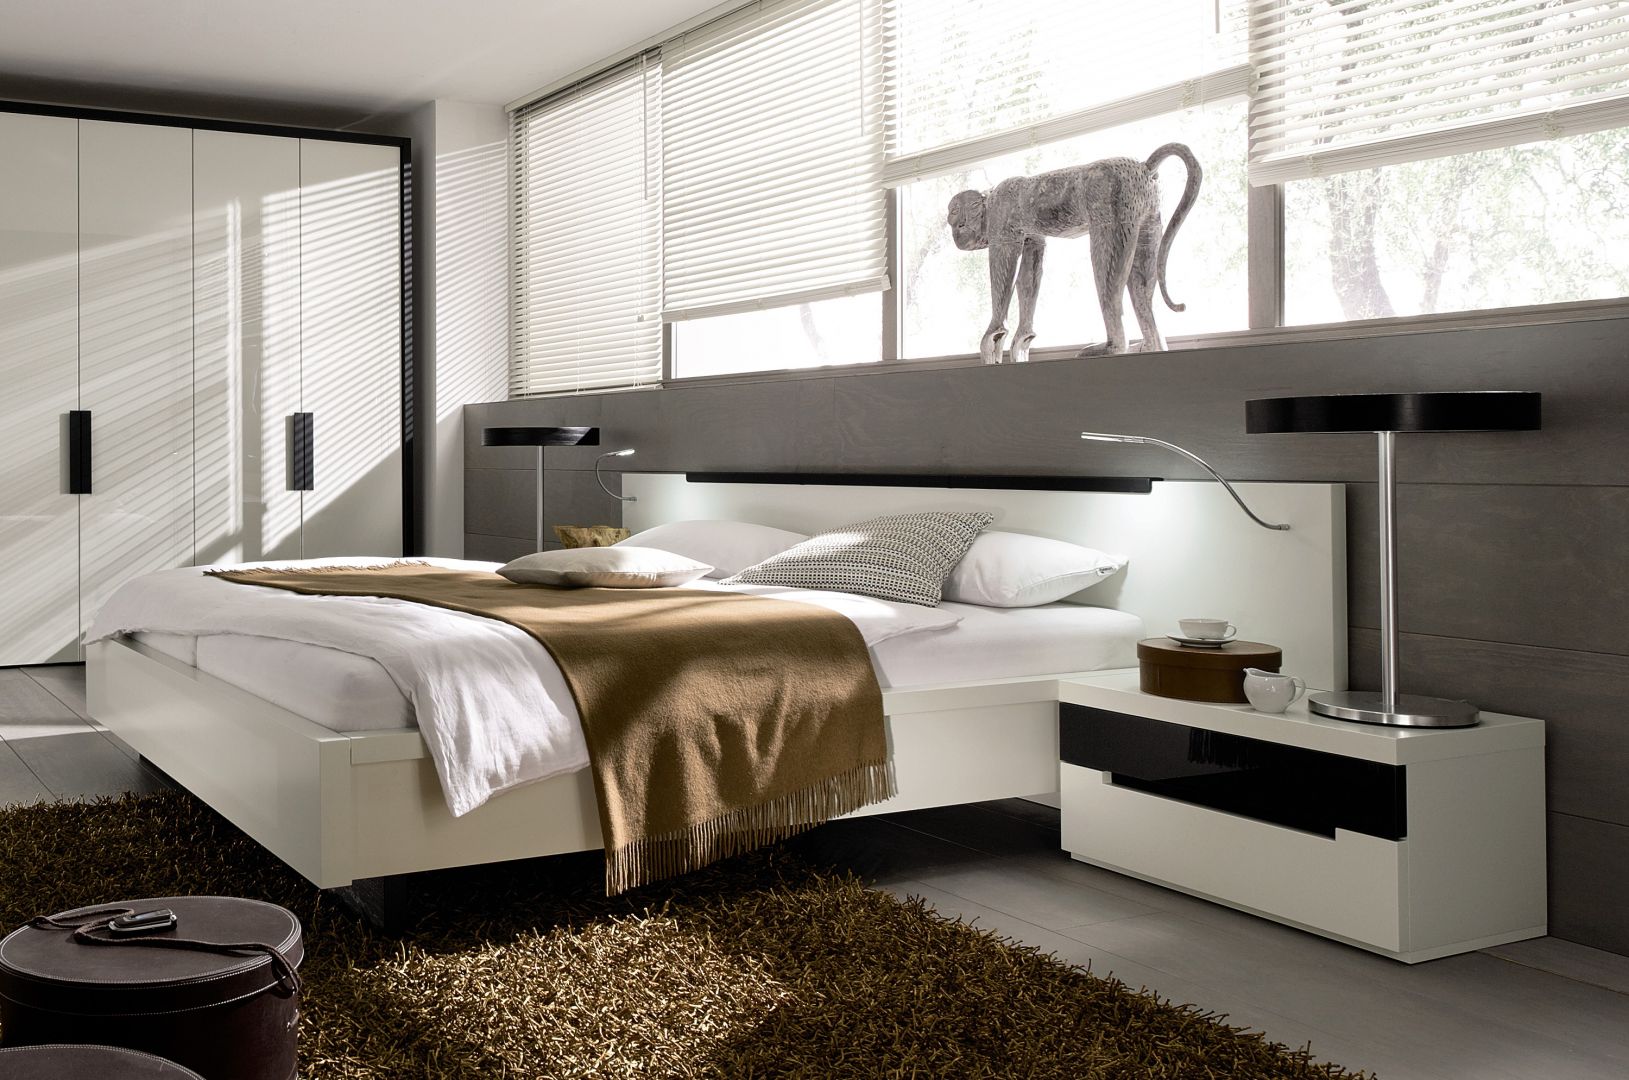 Łóżko z podświetlanym zagłówkiem to nowoczesny i bardzo praktyczny element sypialni. Fot. Huelsta